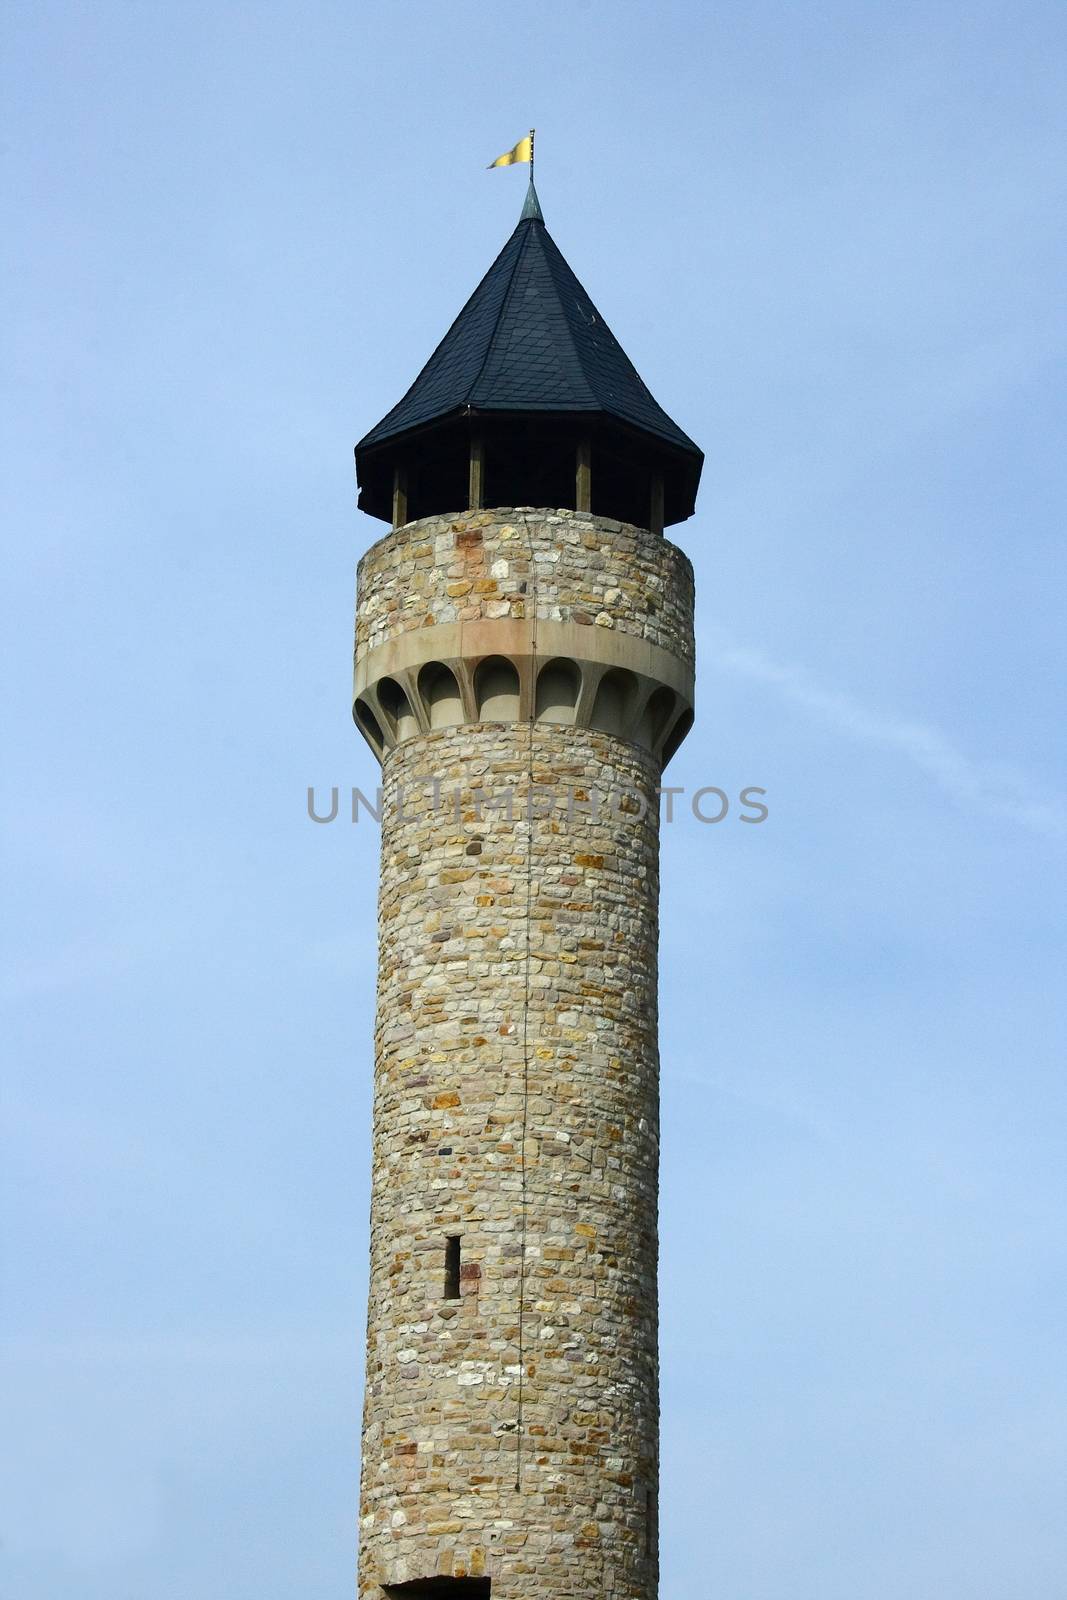 The Wartburg Castle tower in Freimersheim, Germany     der Wartburgturm bei Freimersheim,Deutschland